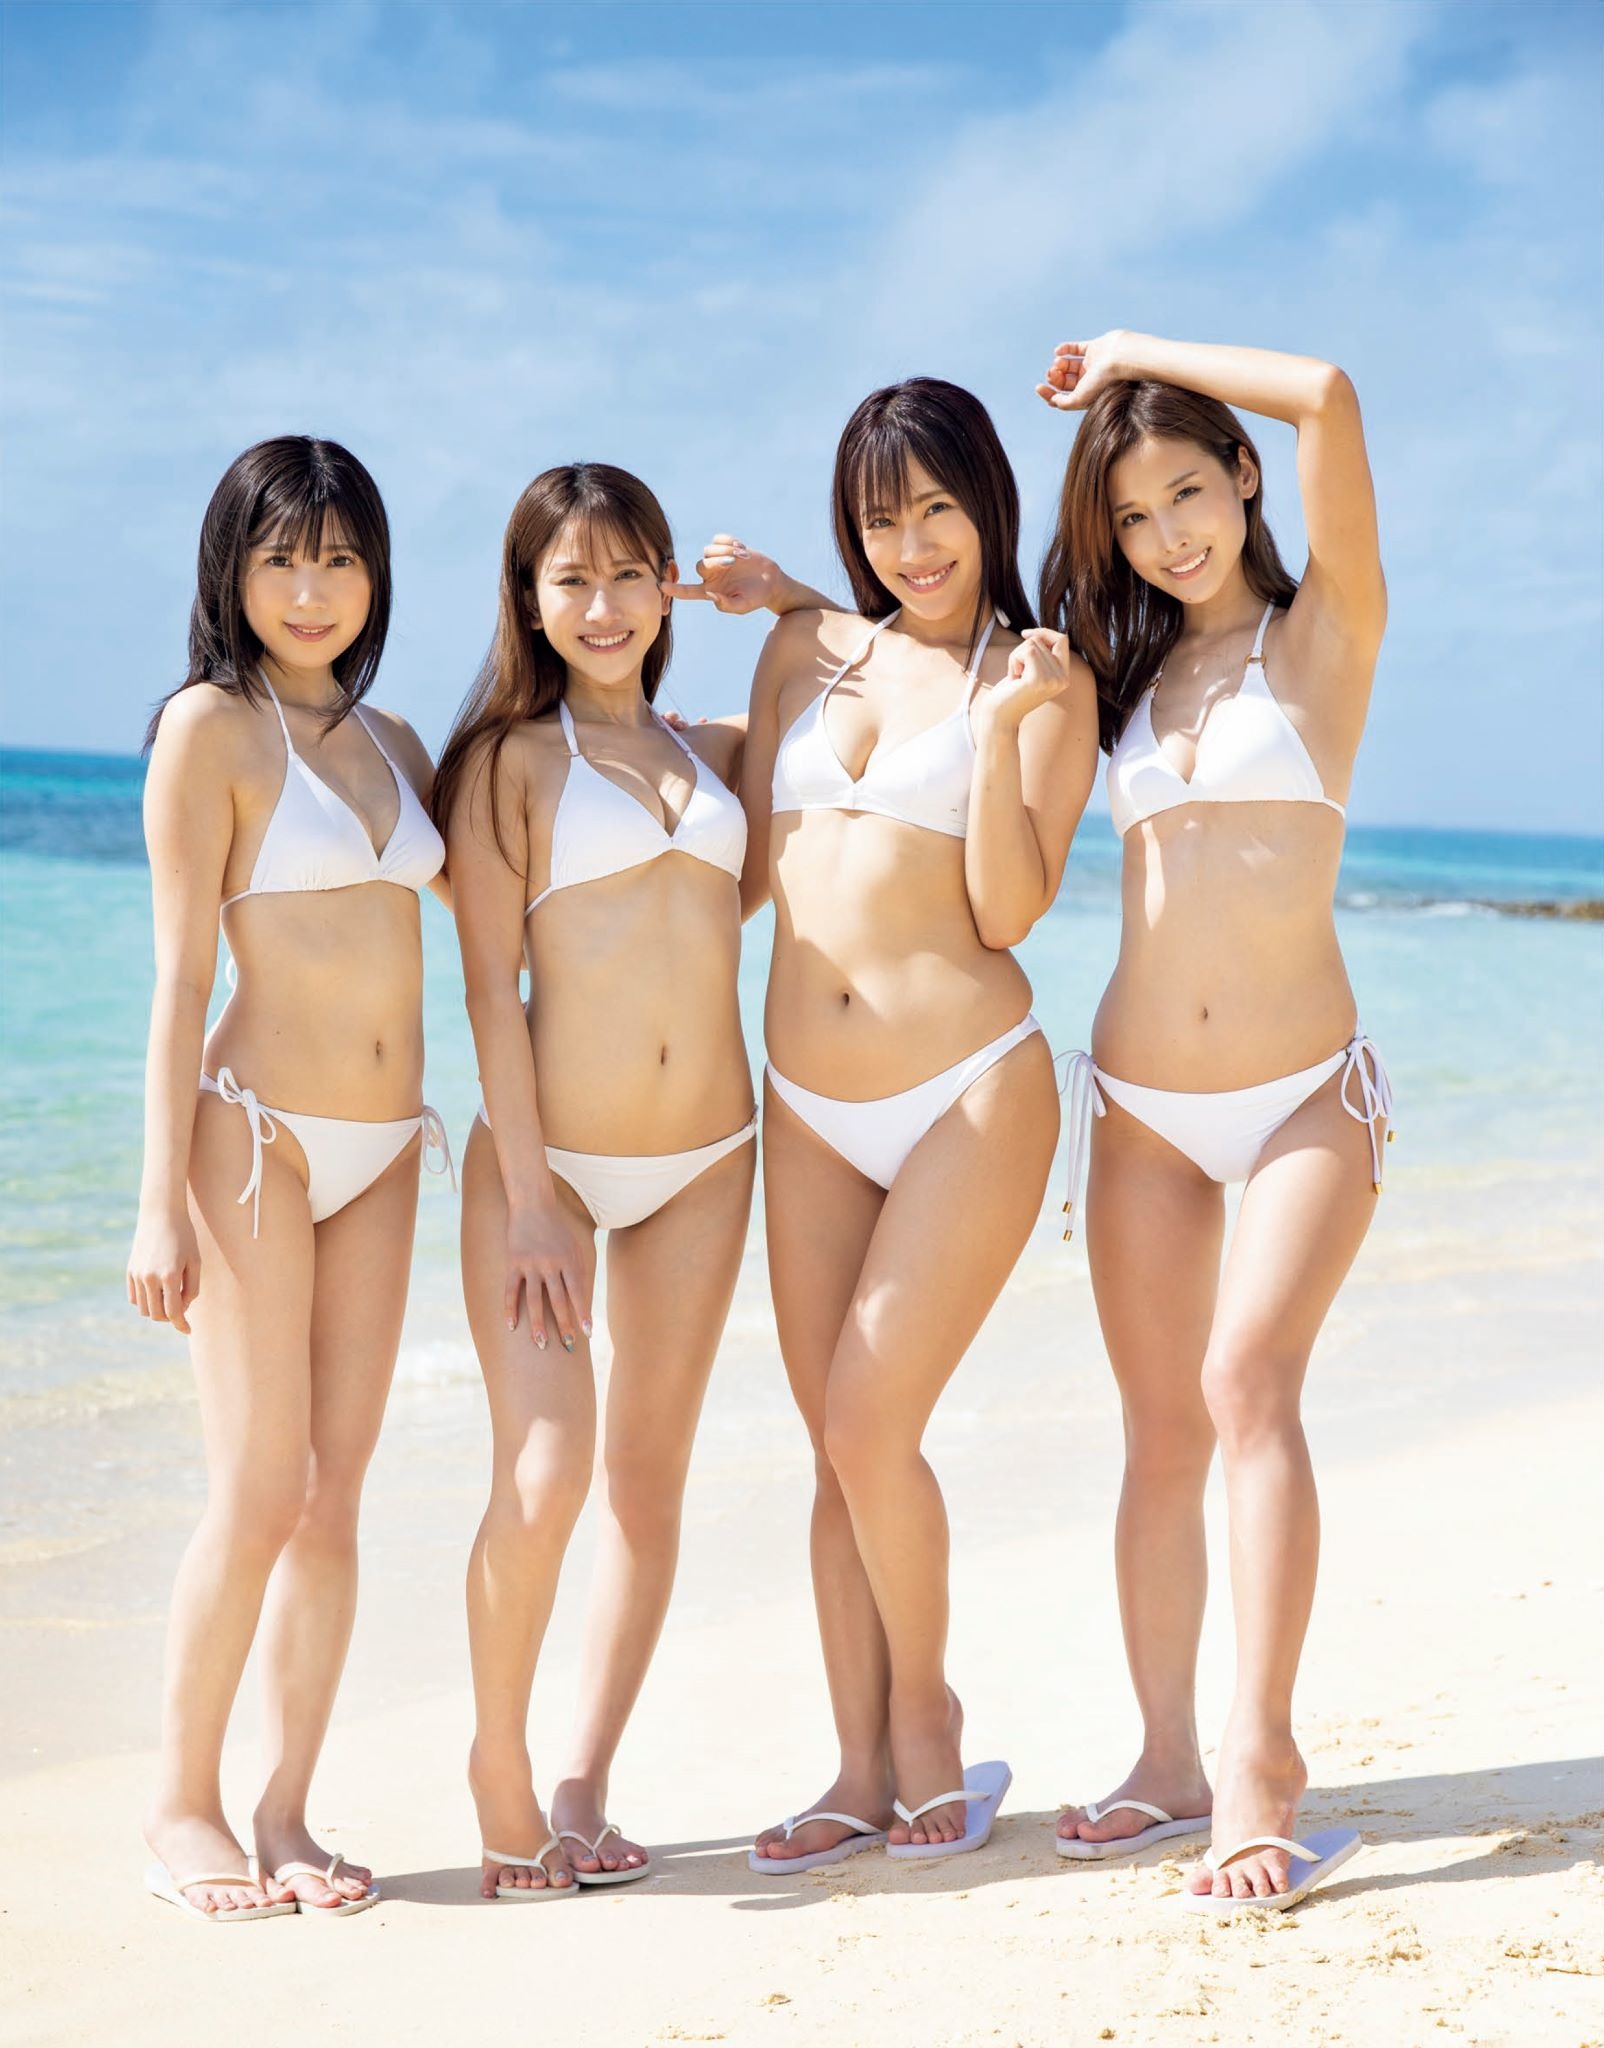 ミスflash21の美女4人が集結 まぶしい水着姿を披露 Rbb Today